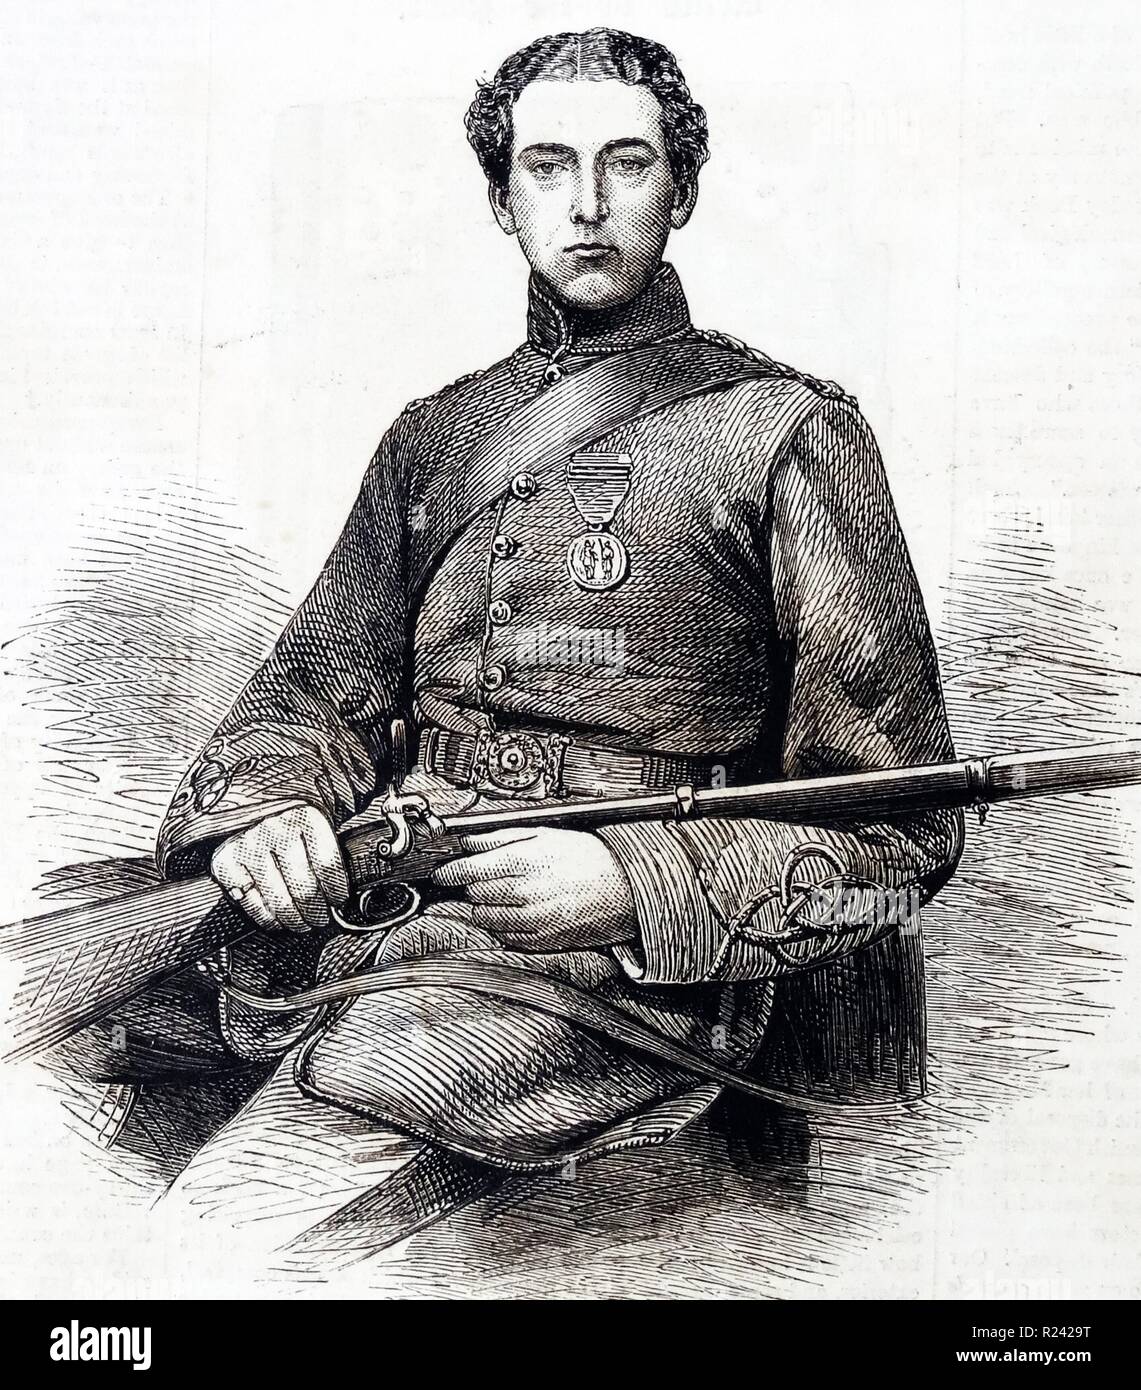 Gravure de M. Edward Patron, le champion d'Angleterre. carabine Datée 1860 Banque D'Images